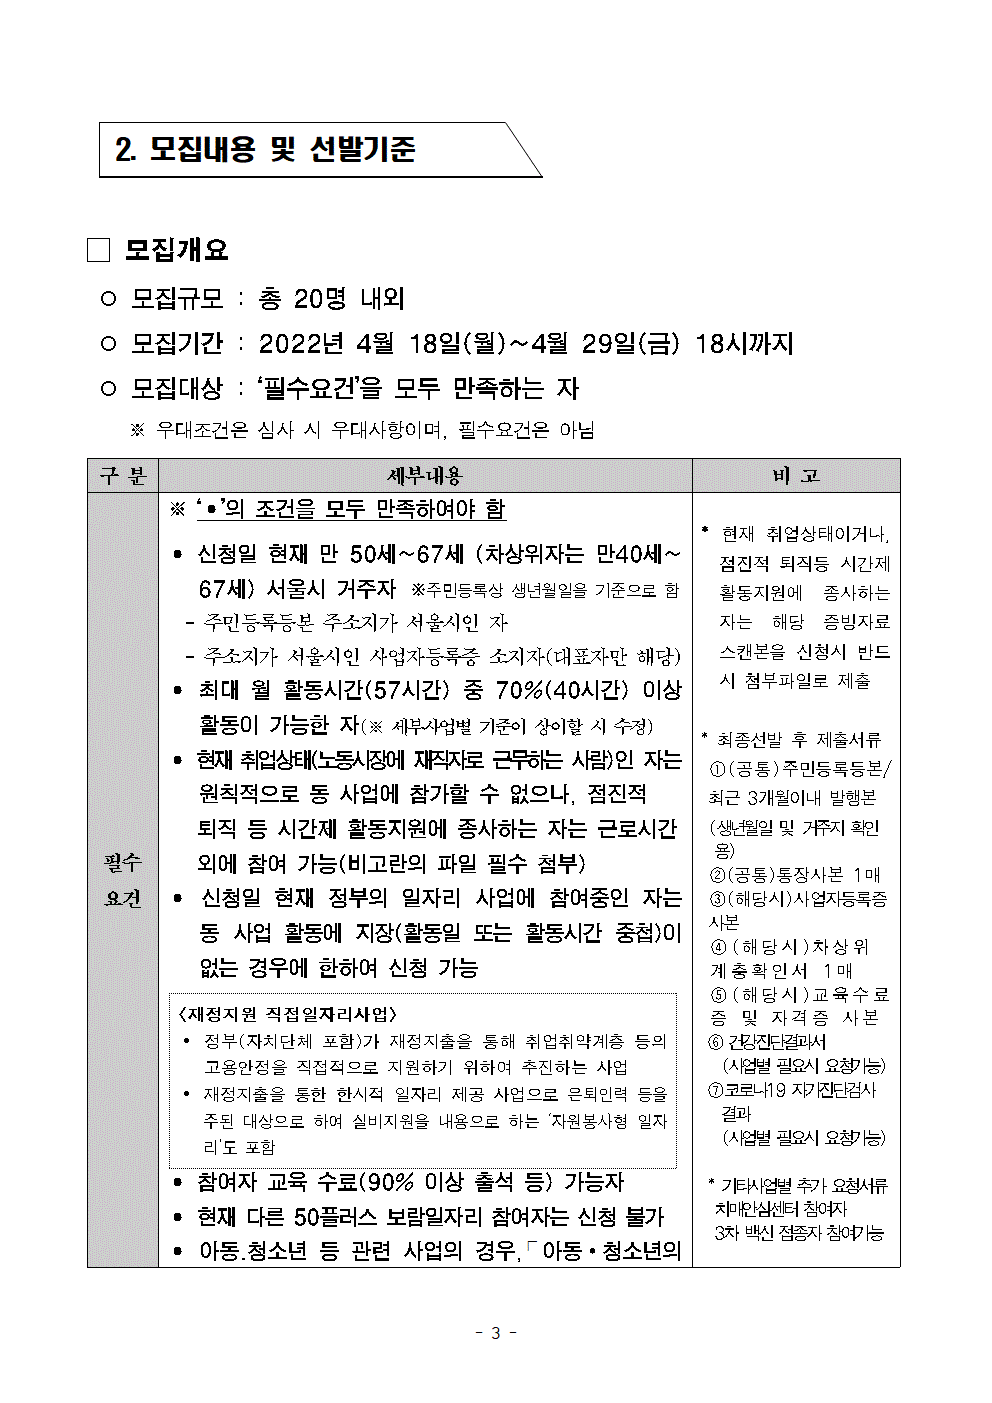 공고문+2022년+보람일자리사업+'지역특화사업단'+신규모집++04.18-2-2003.gif